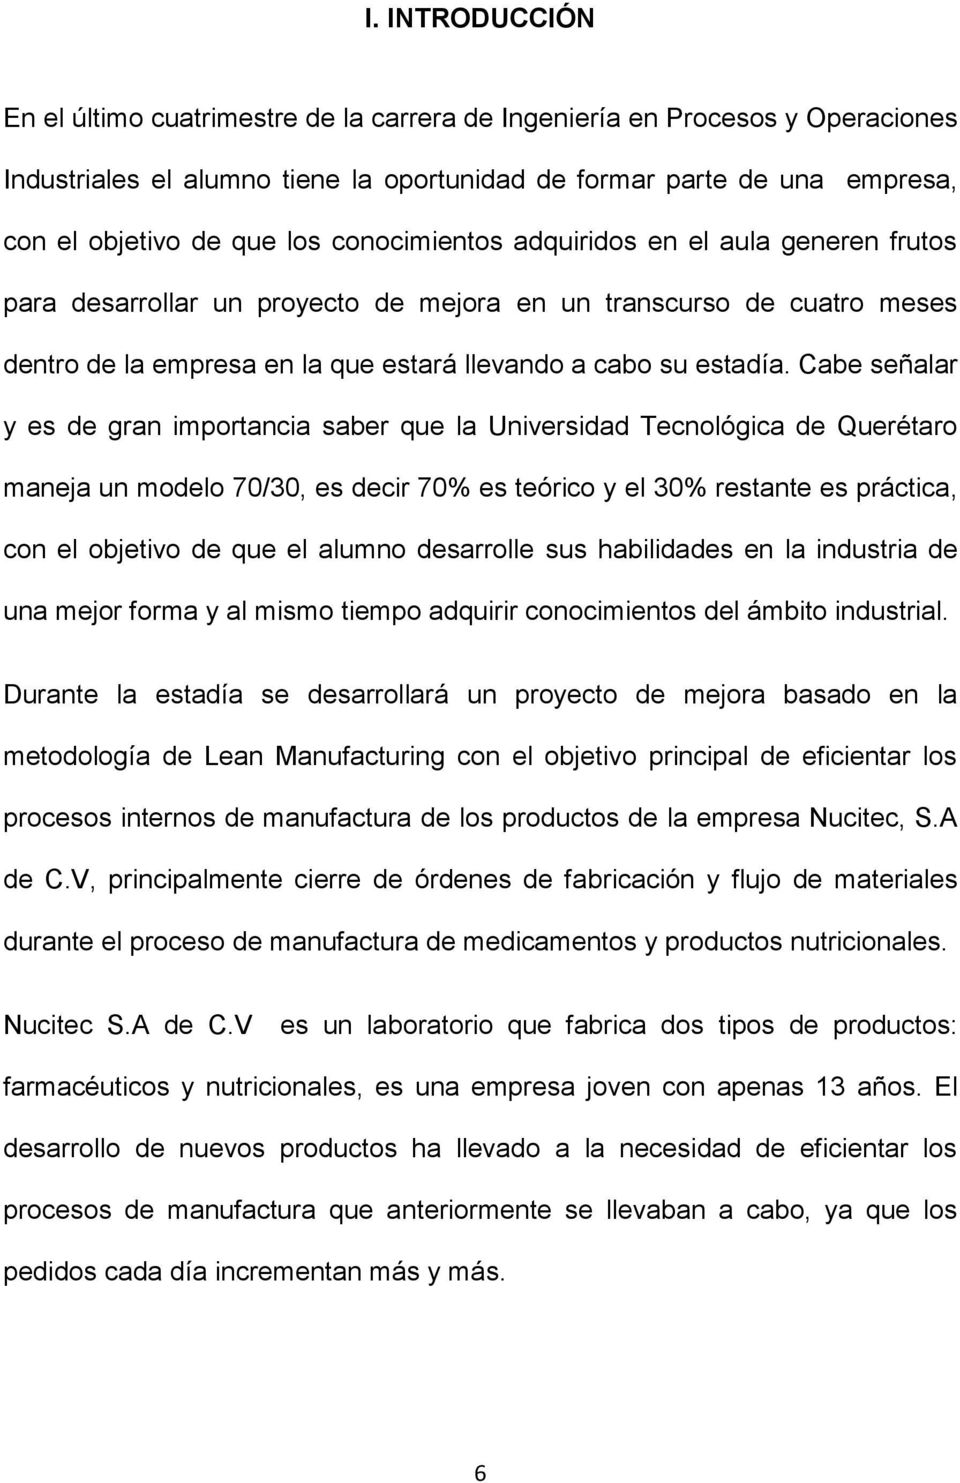 Cabe señalar y es de gran importancia saber que la Universidad Tecnológica de Querétaro maneja un modelo 70/30, es decir 70% es teórico y el 30% restante es práctica, con el objetivo de que el alumno